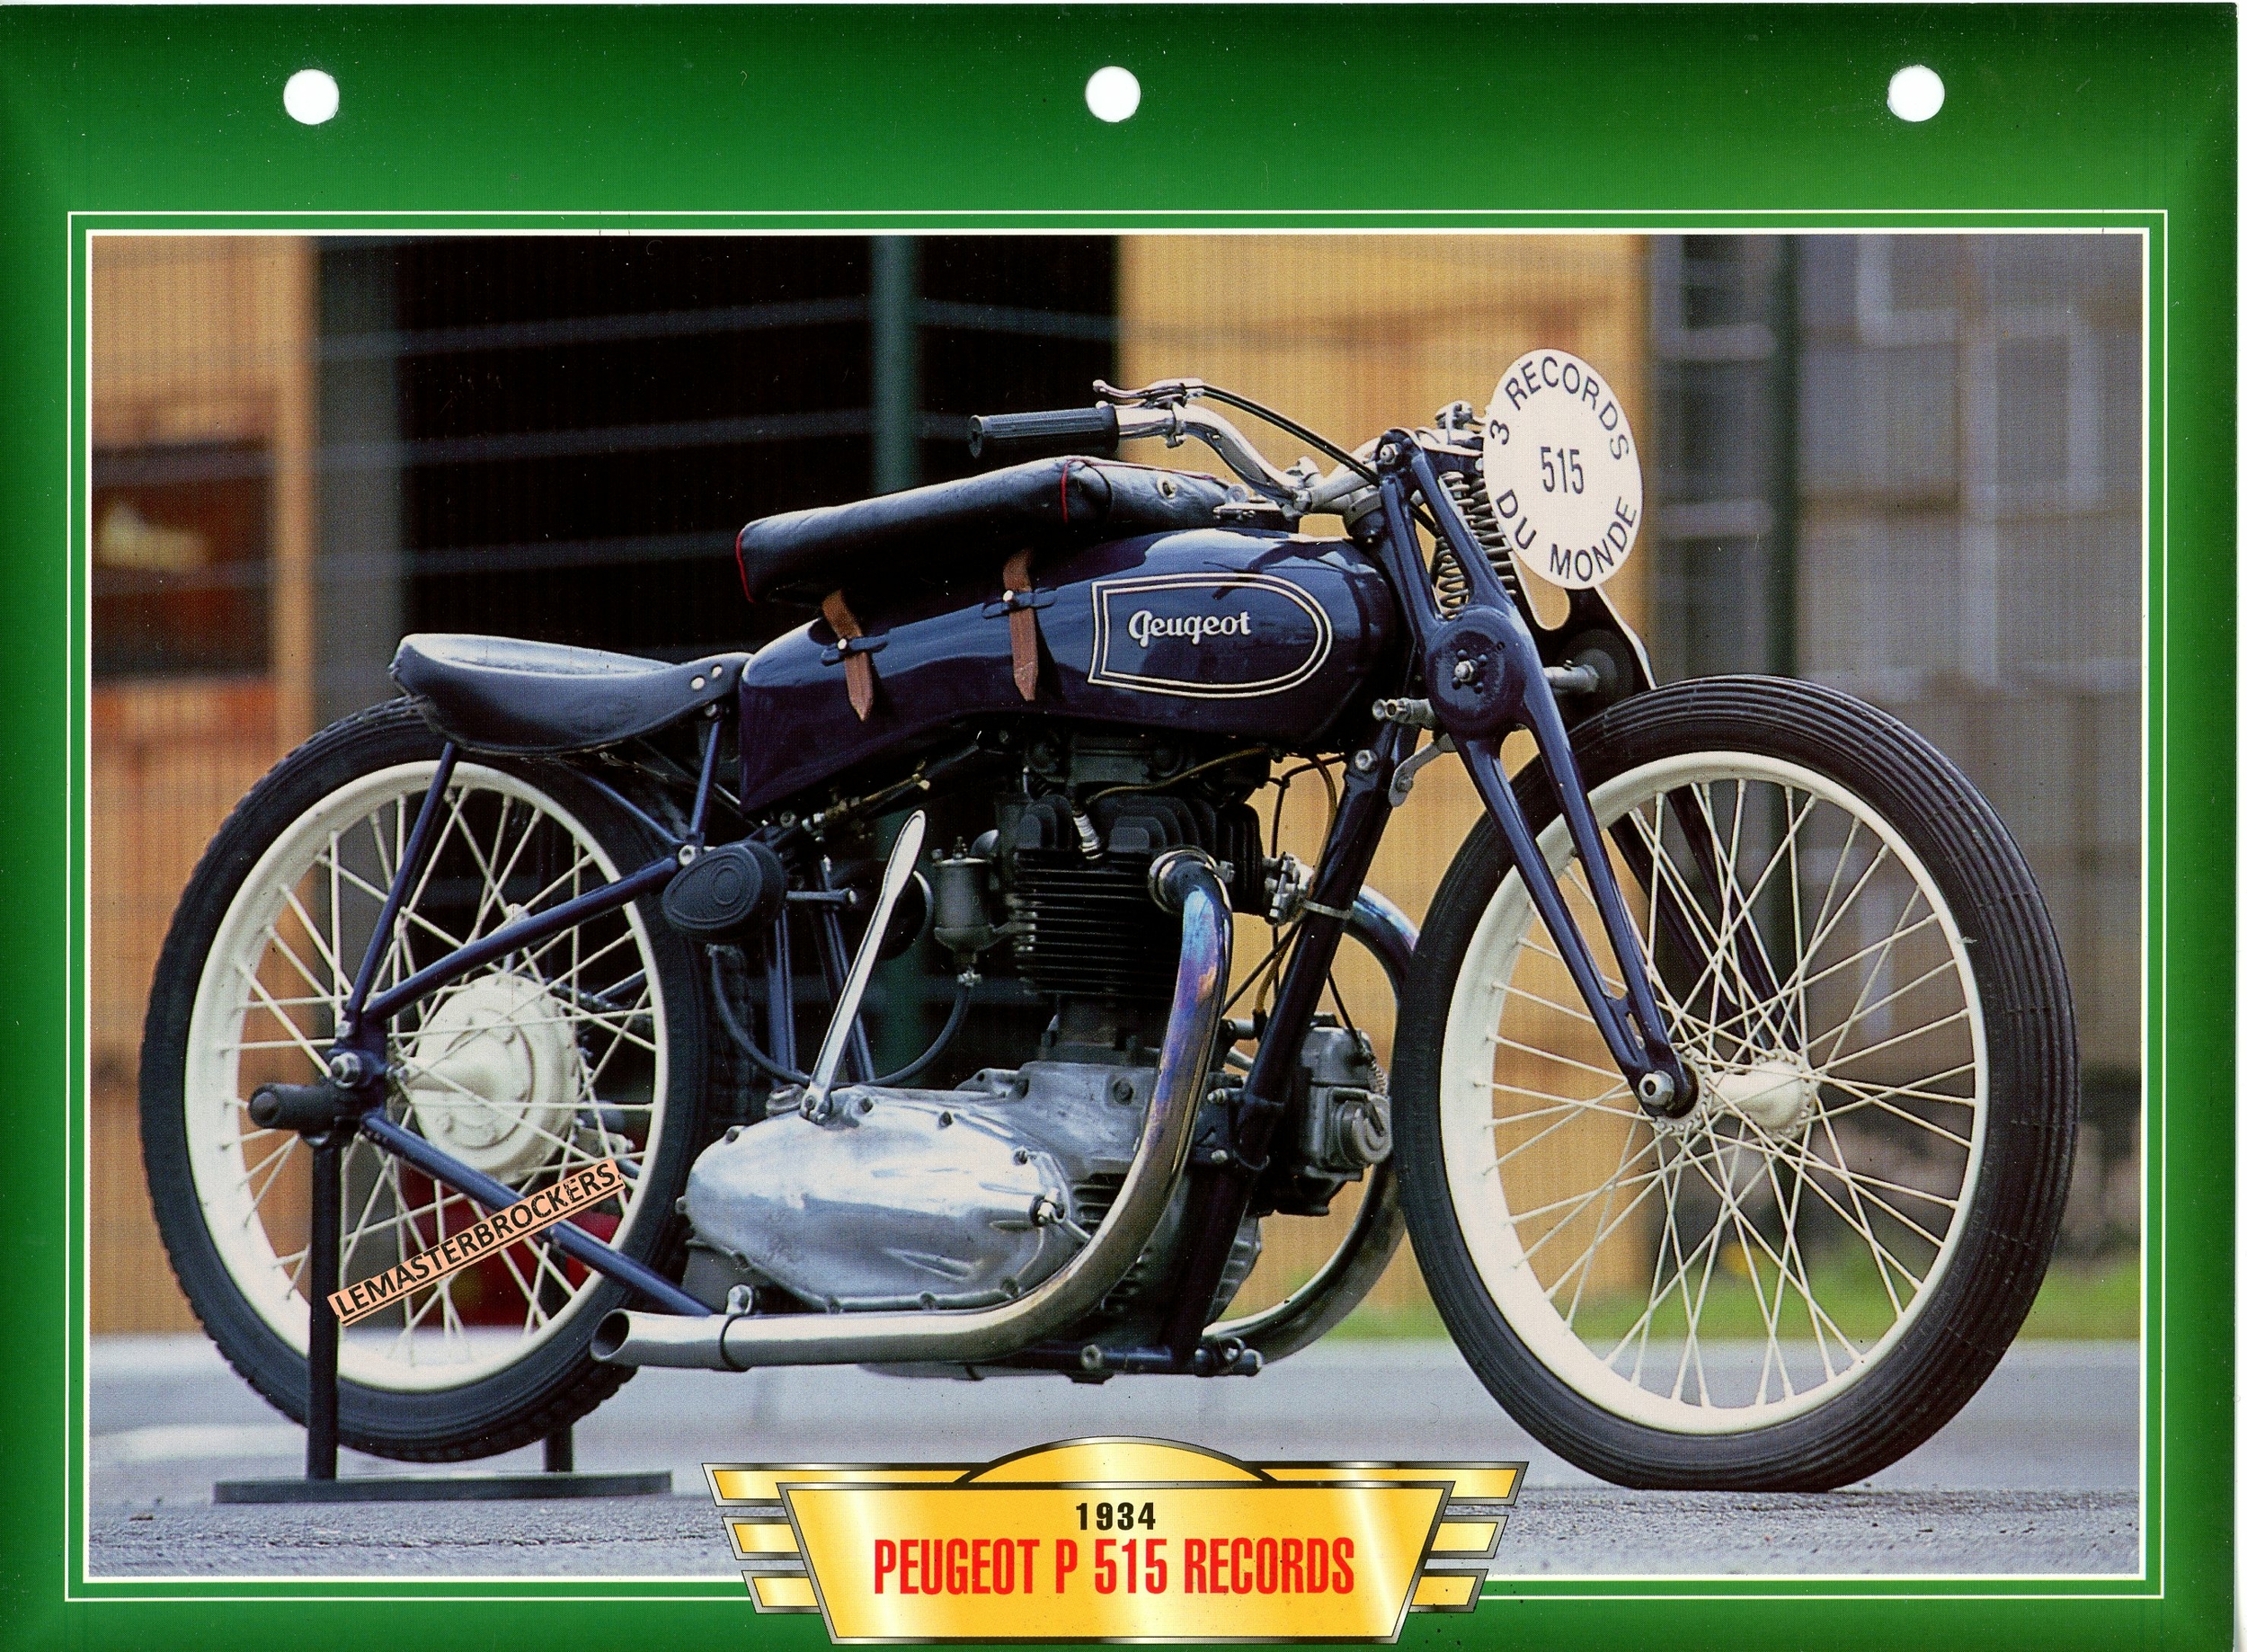 PEUGEOT-P515-RECORDS-1934-FICHE-MOTO-ATLAS-ÉDITION-LEMASTERBROCKERS